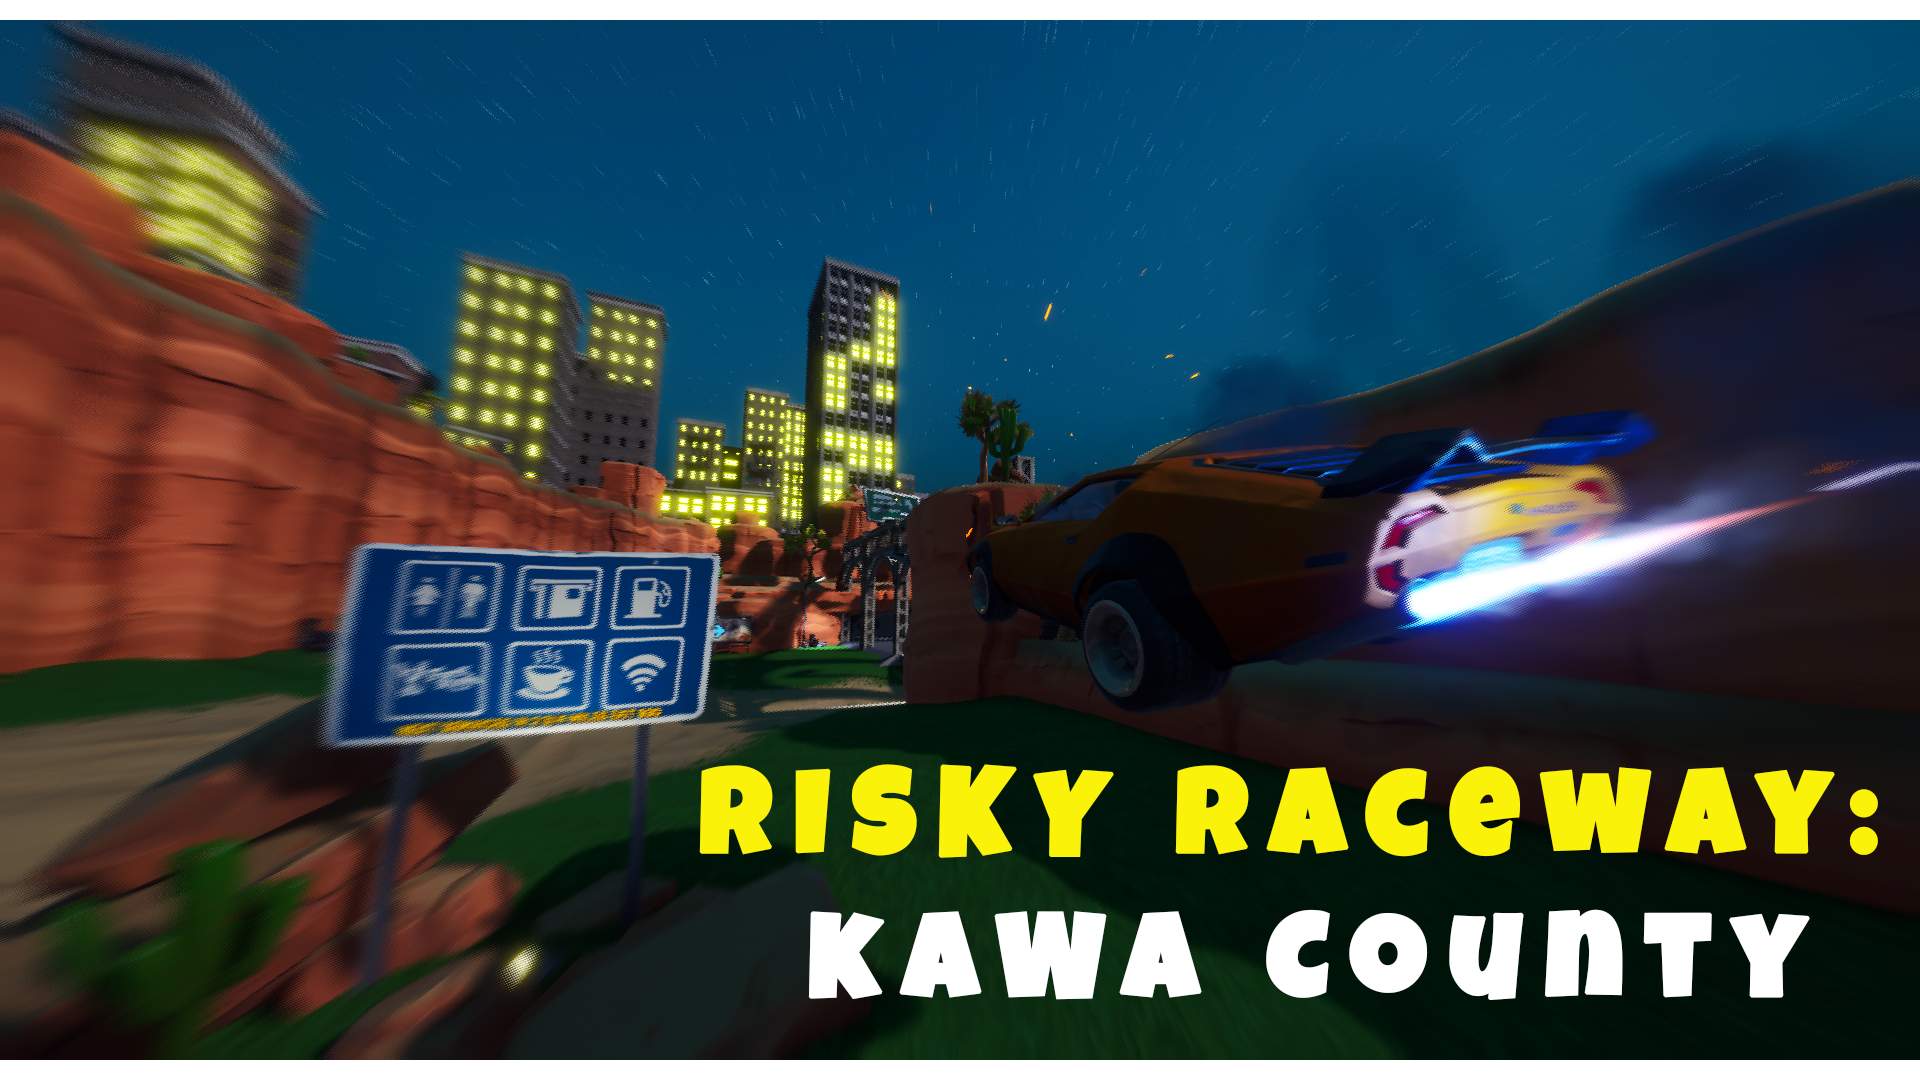 RISKY RACEWAY 🏁 KAWA COUNTY